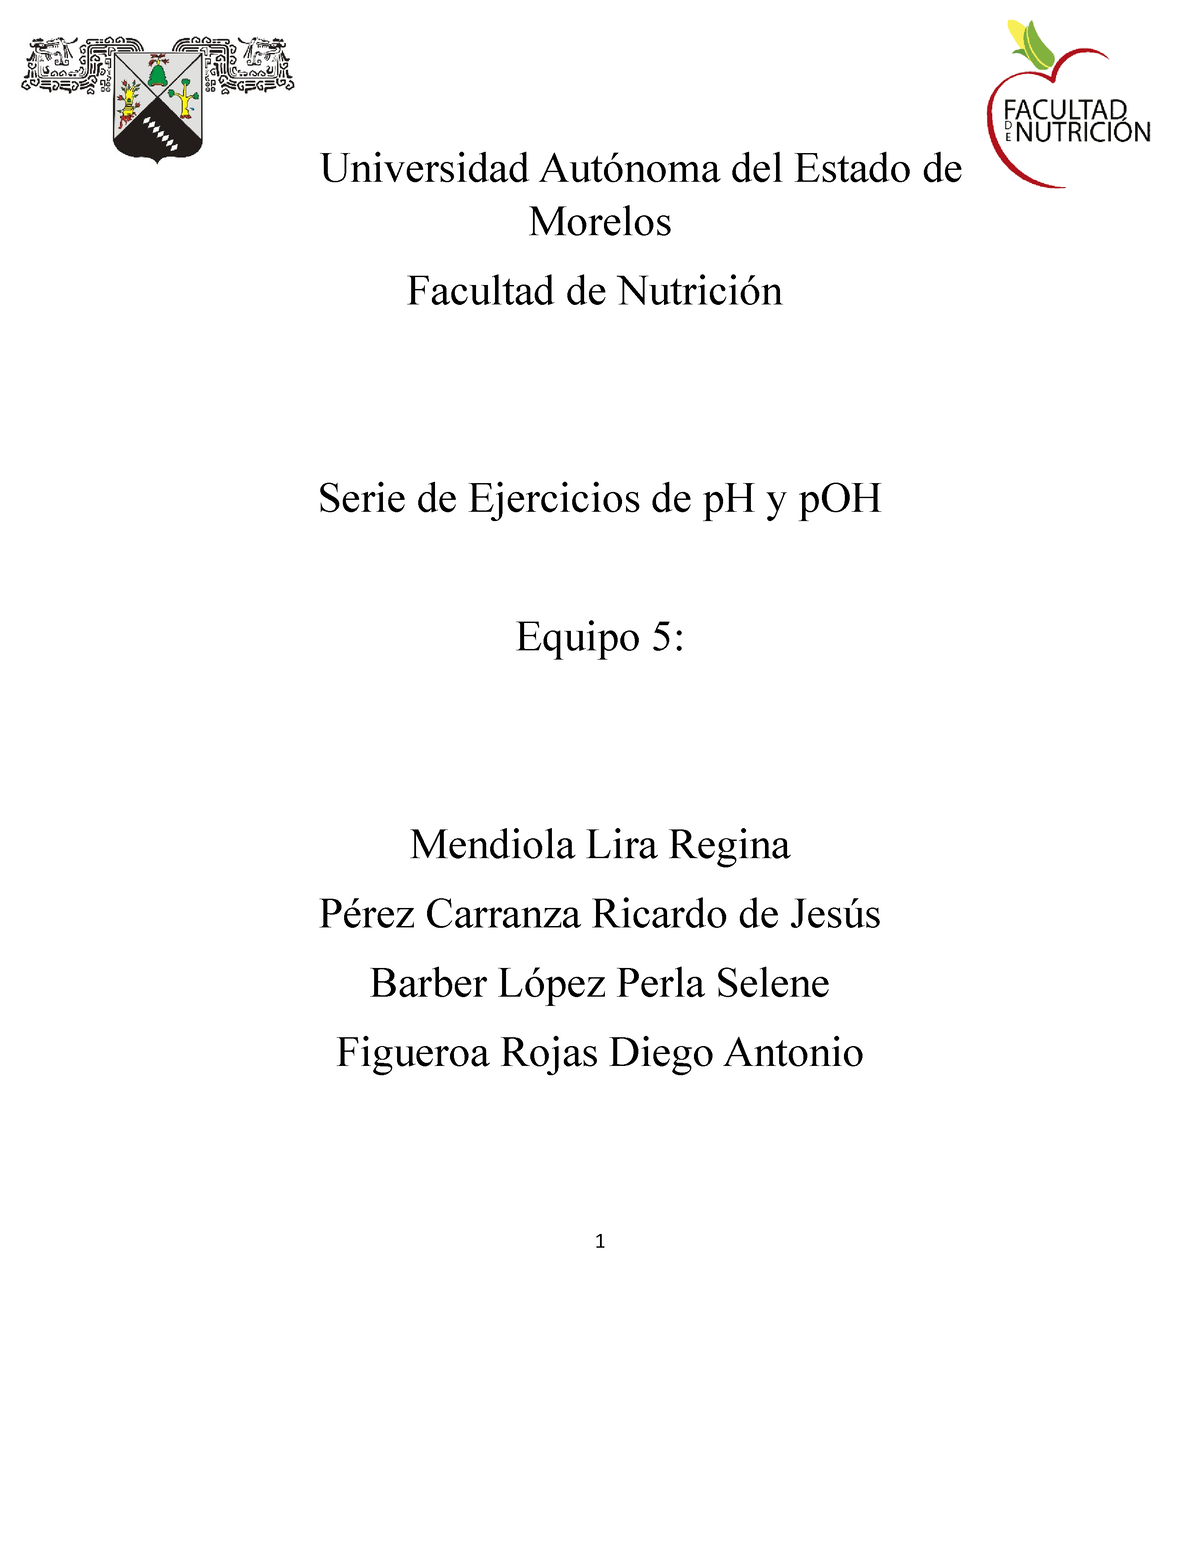 Serie De Ejercicios De P H Equipo 5 Universidad Autónoma Del Estado De Morelos Facultad De 0191